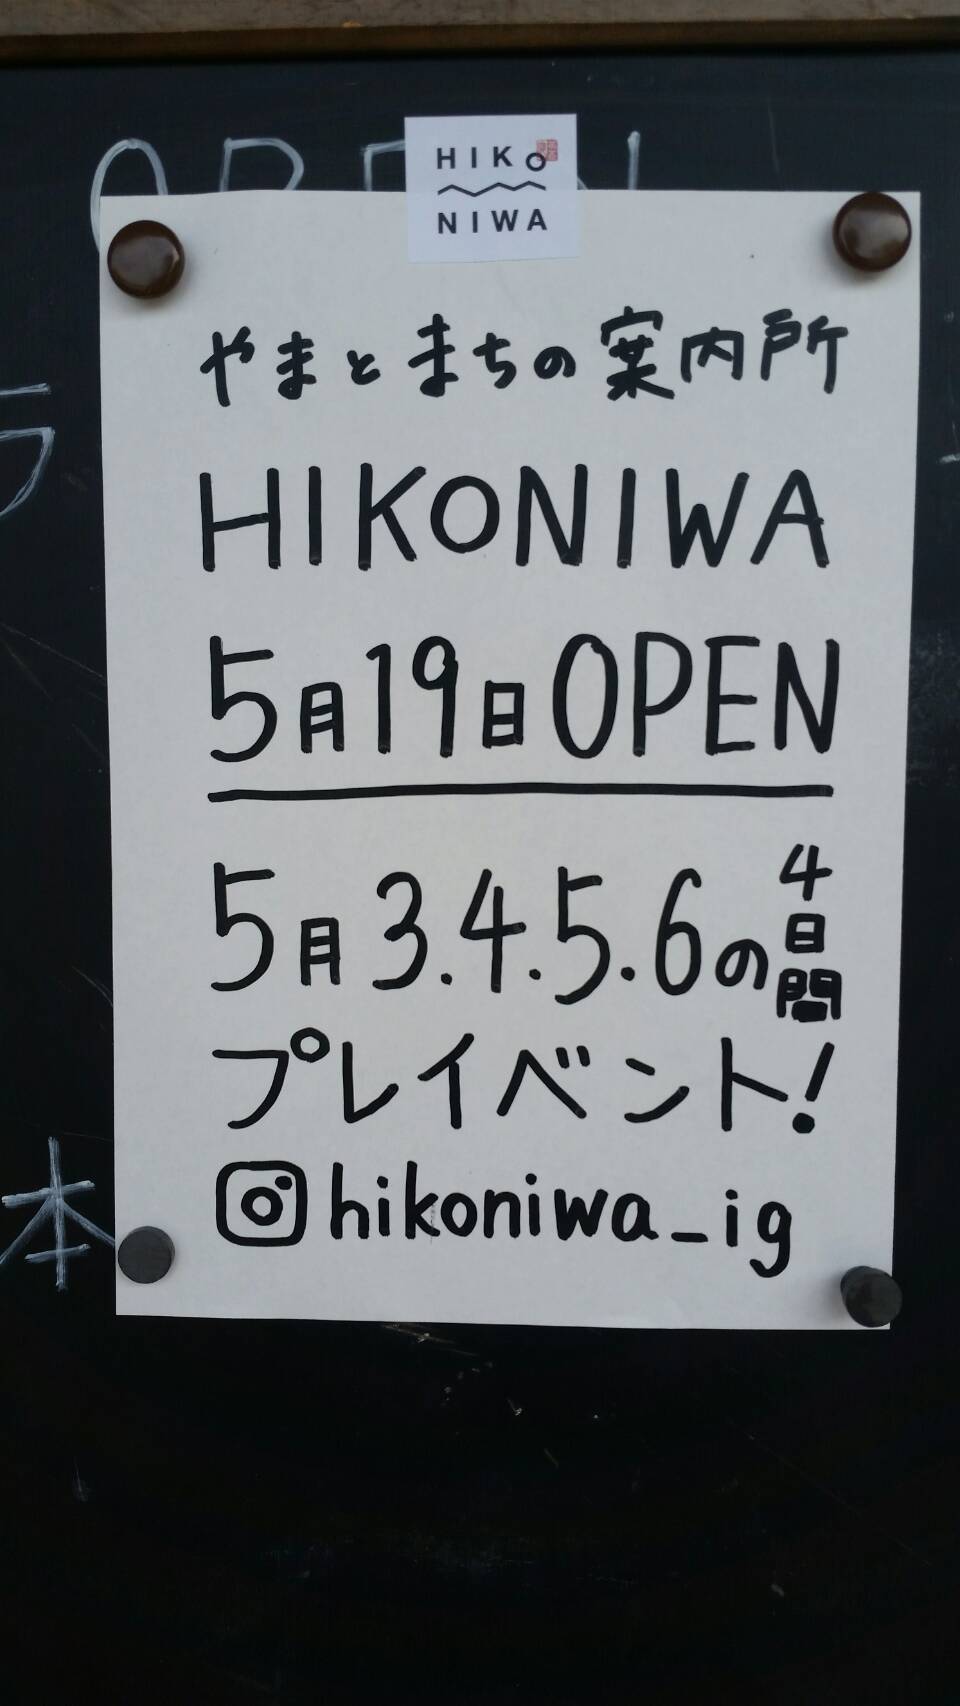 やまとまちの案内所「HIKONIWA」オープン.jpg